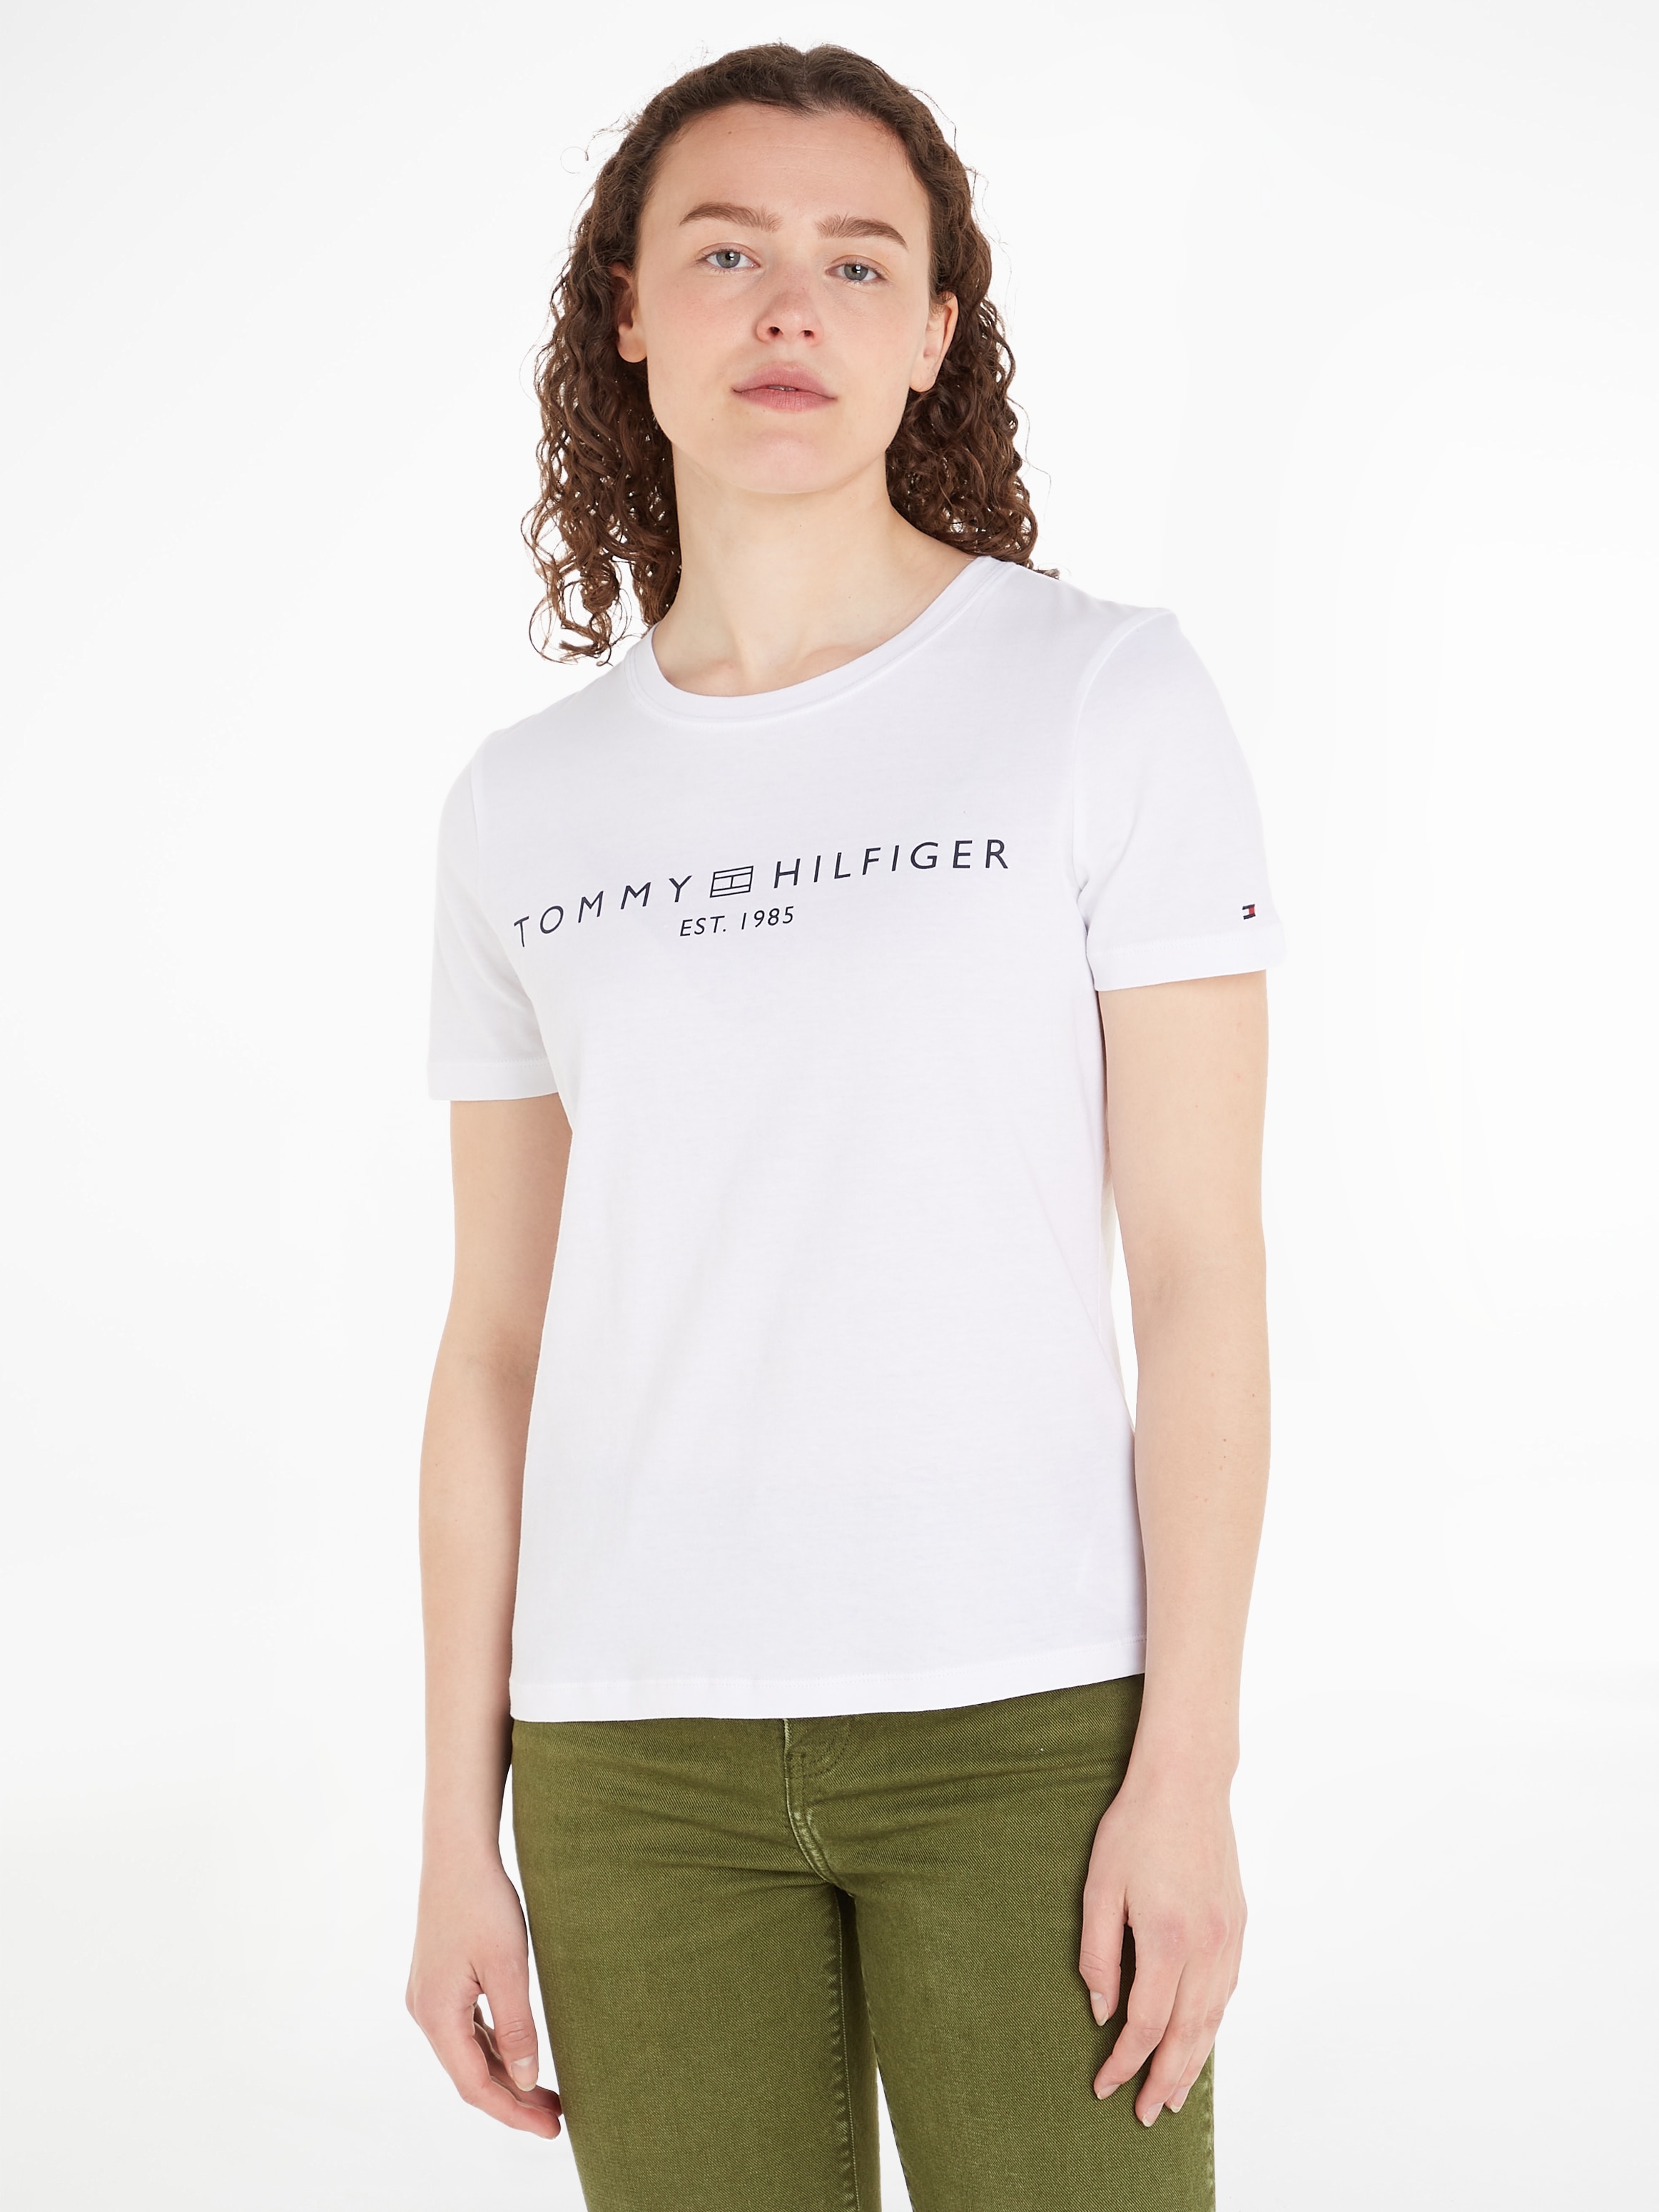 Tommy Hilfiger T-Shirt, mit Markenlabel der walking online kaufen auf I\'m Brust 